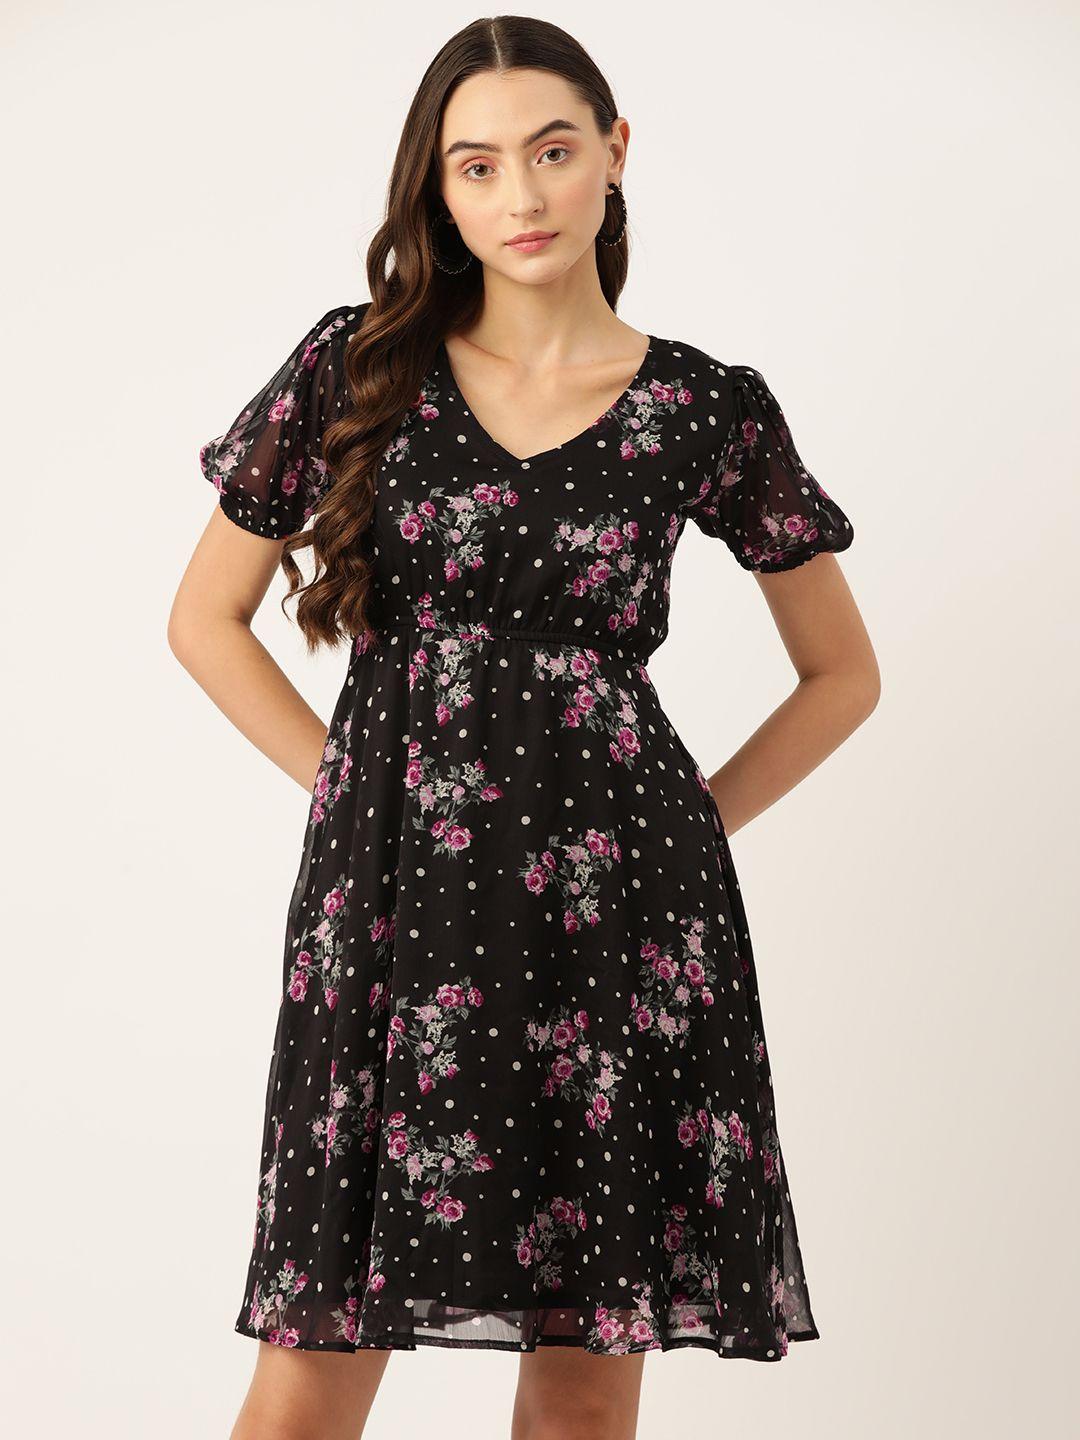 wisstler-floral-print-puff-sleeves-chiffon-a-line-dress